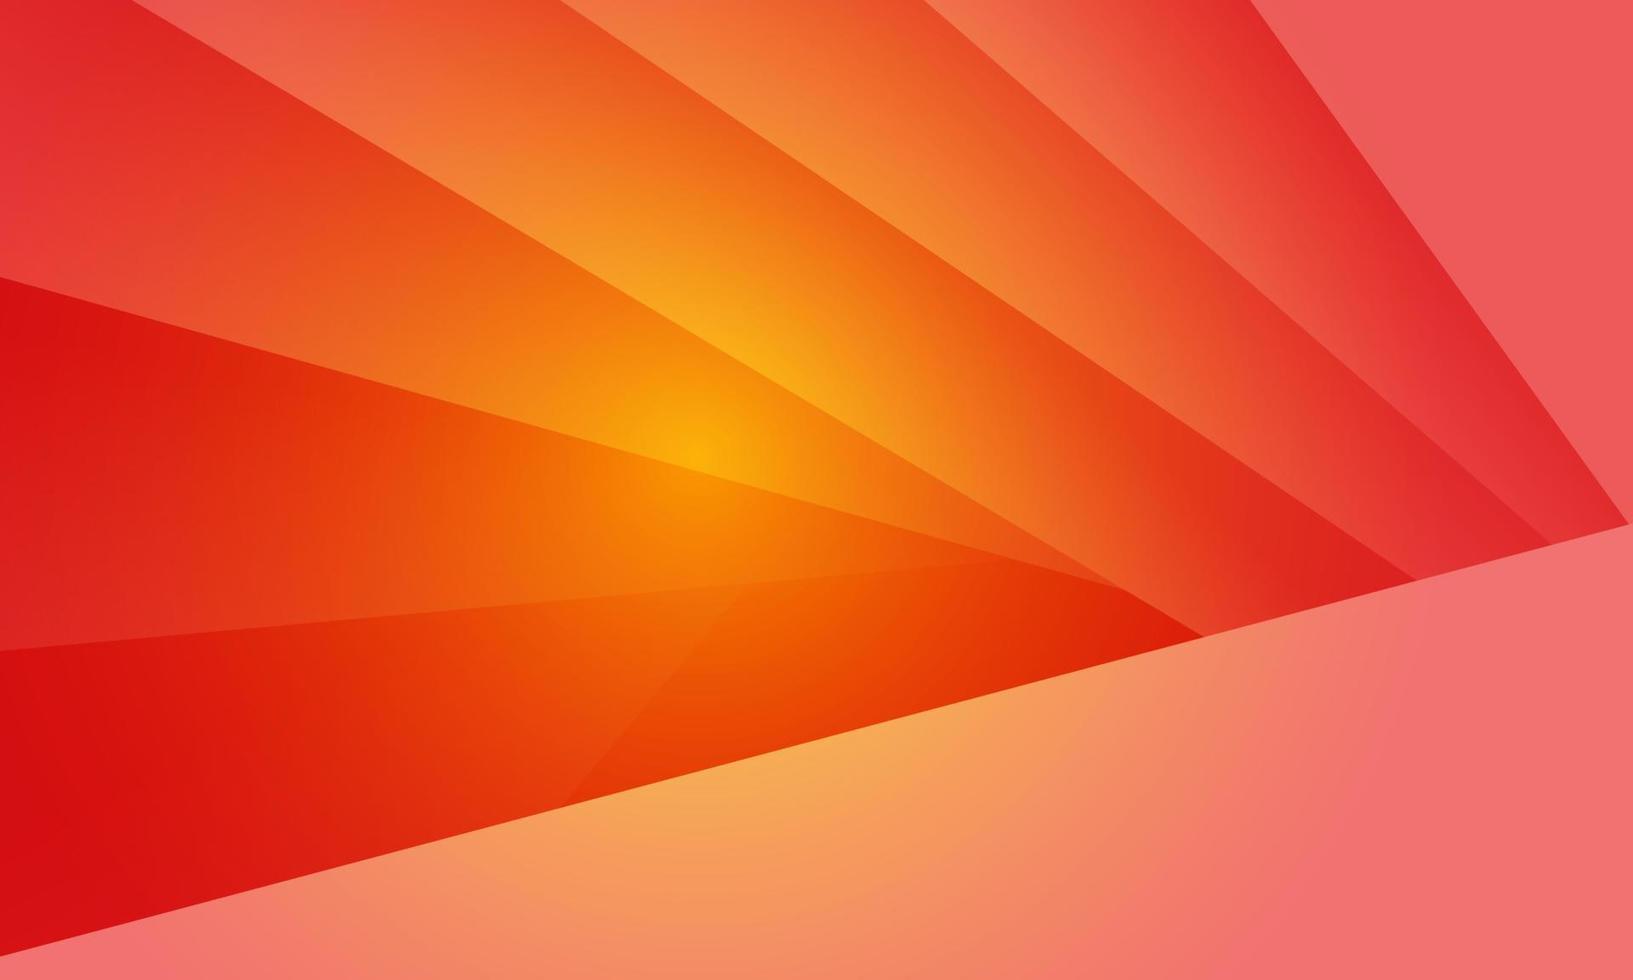 abstrakt orange polygon trianglar form mönster bakgrund. illustration vektor design digital teknik koncept.